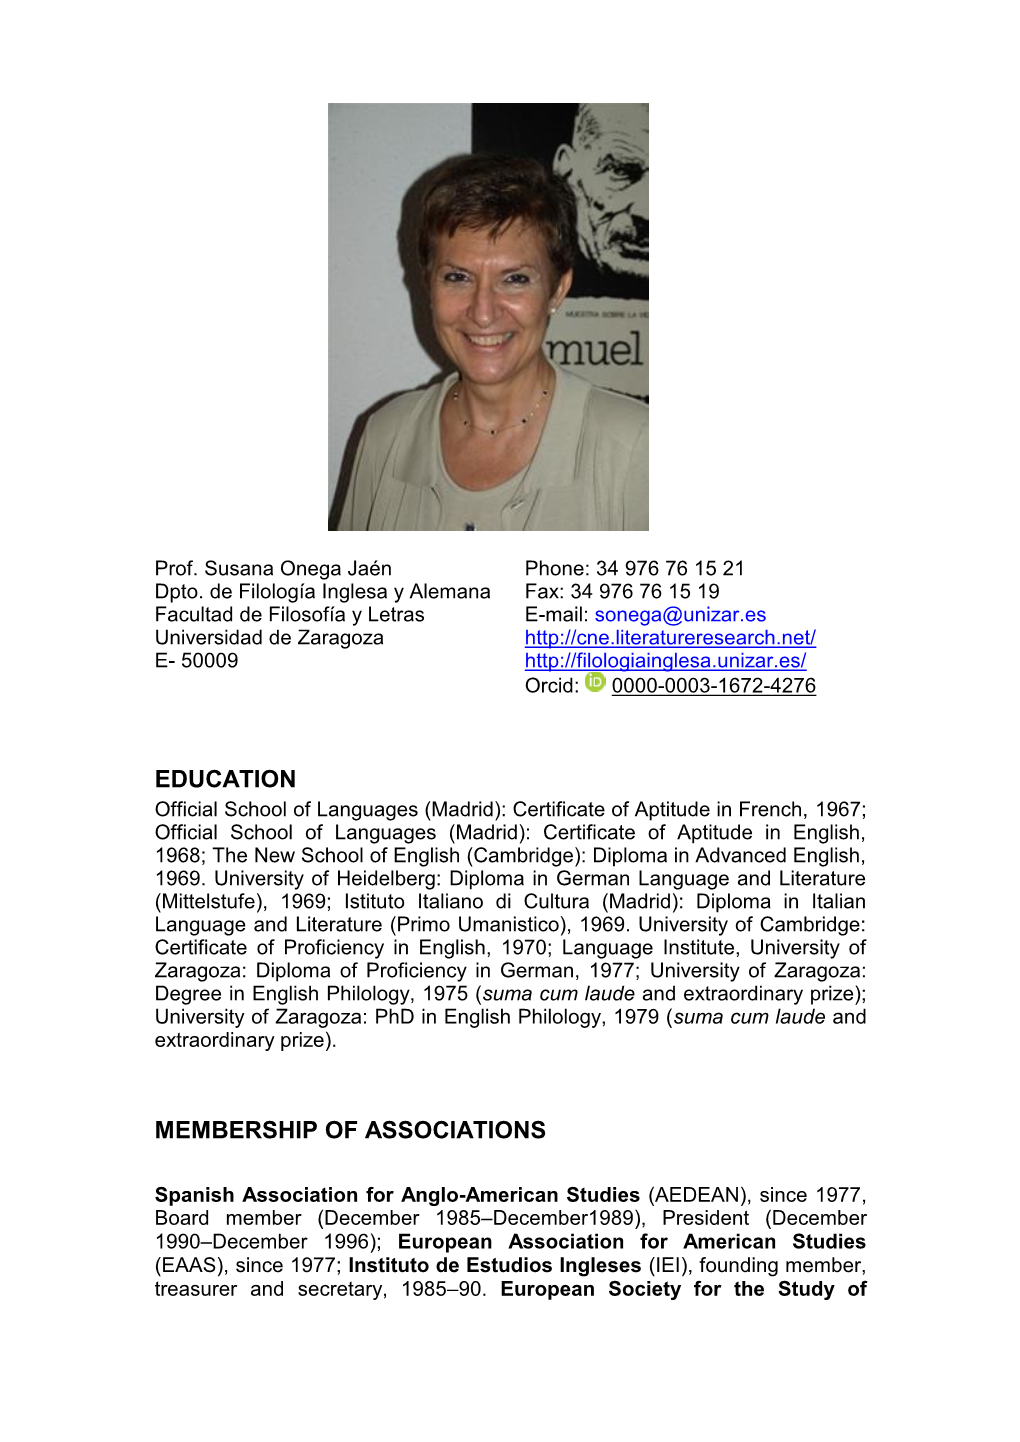 Education Membership of Associations